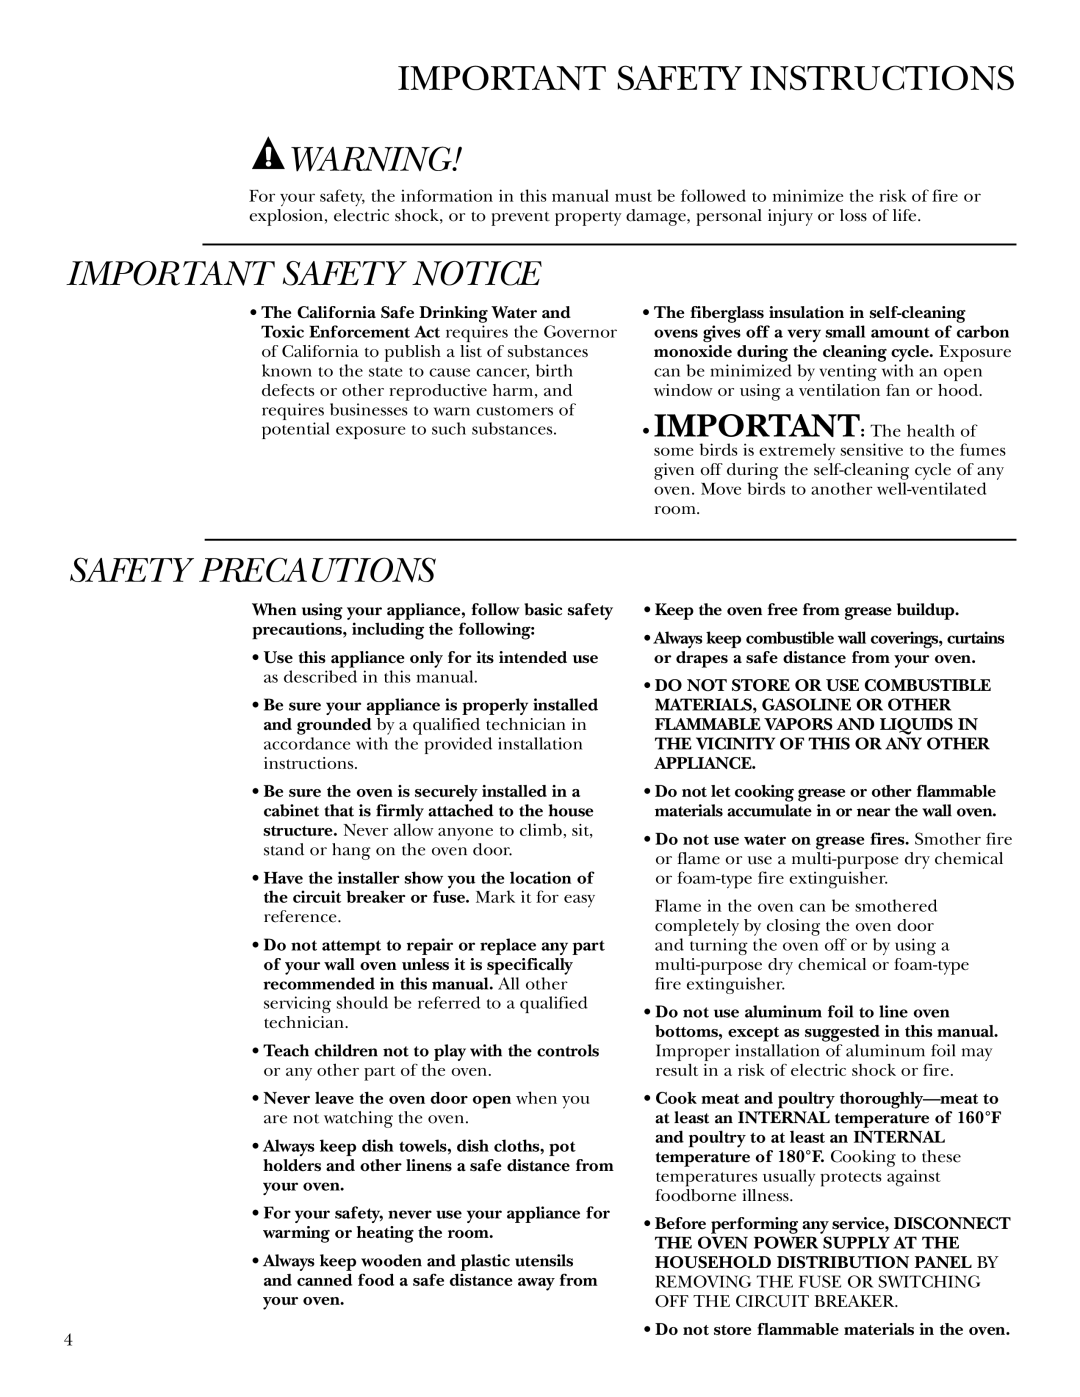 GE ZEK958, ZEK938 owner manual Important Safety Instructions, Important Safety Notice, Safety Precautions 